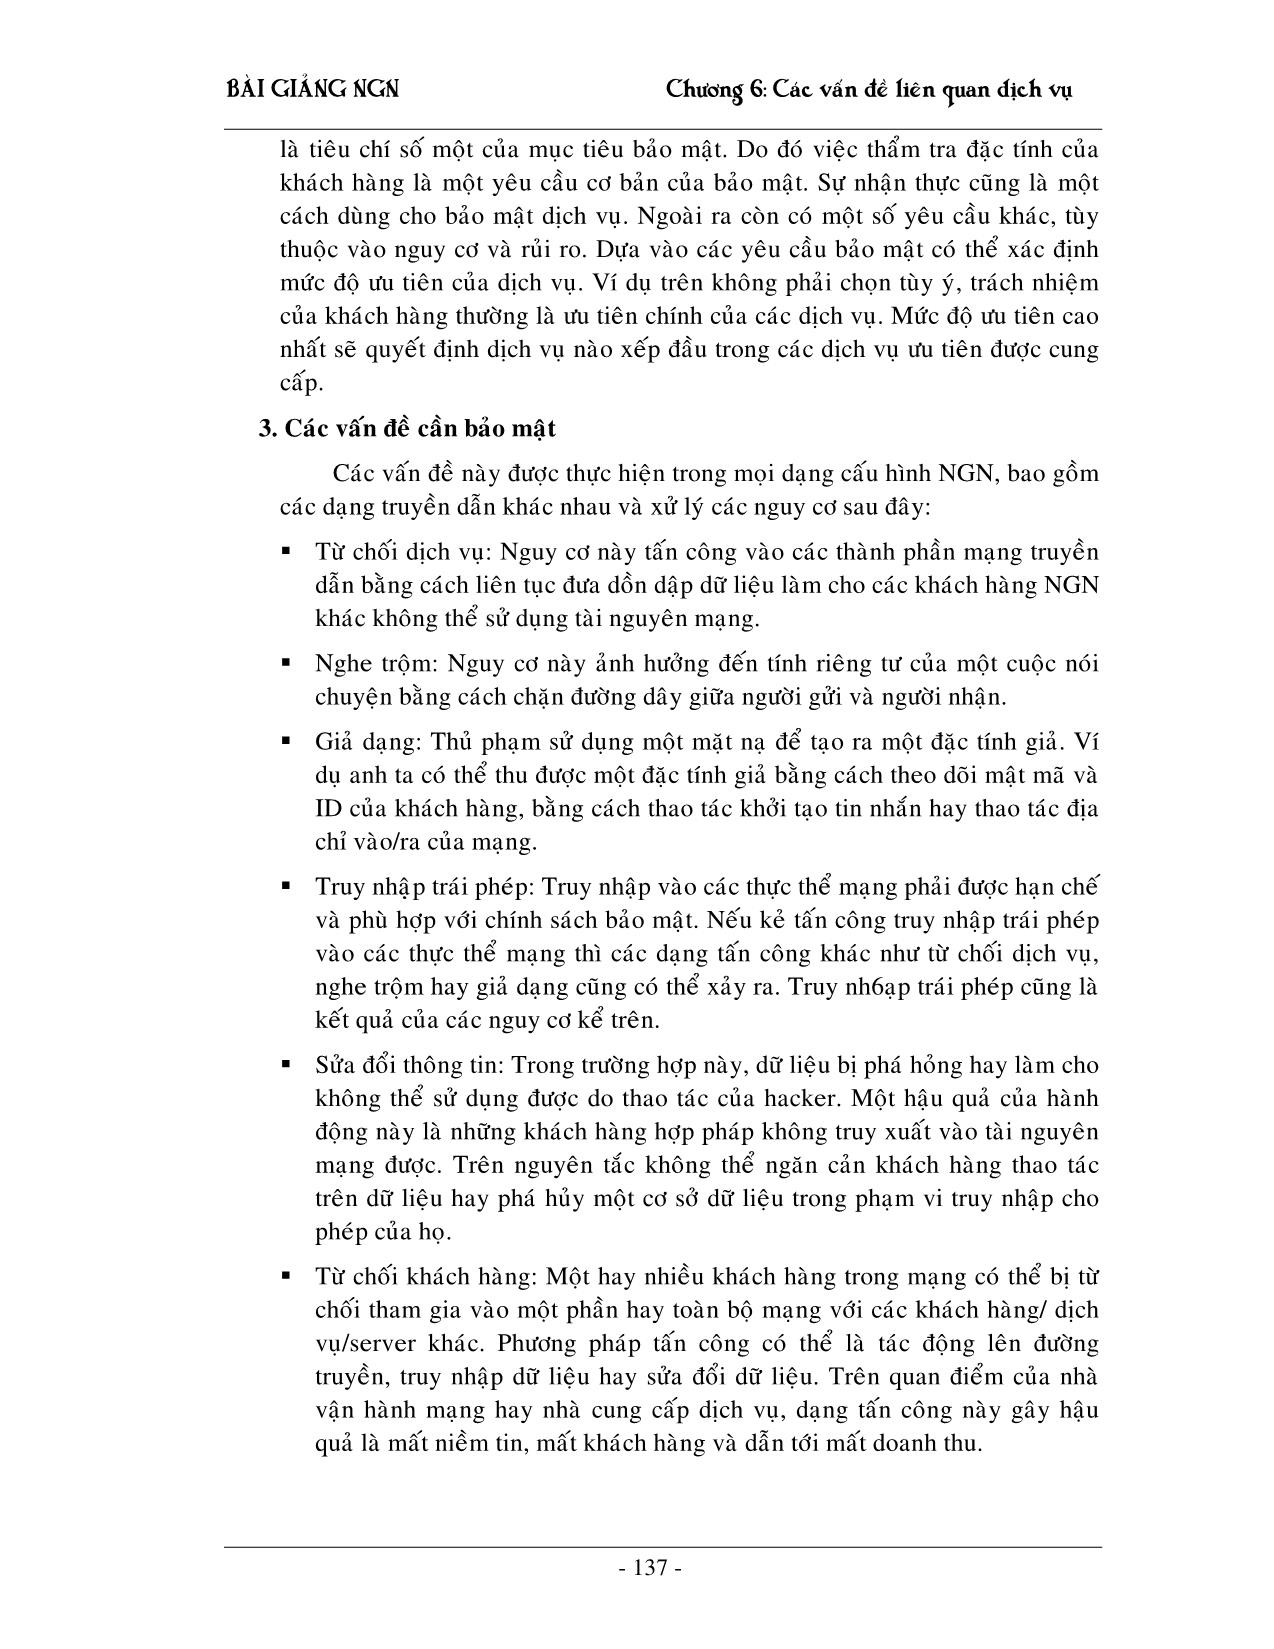 Giáo trình NGN - Chương 6: Các vấn đề liên quan đến dịch vụ trang 4